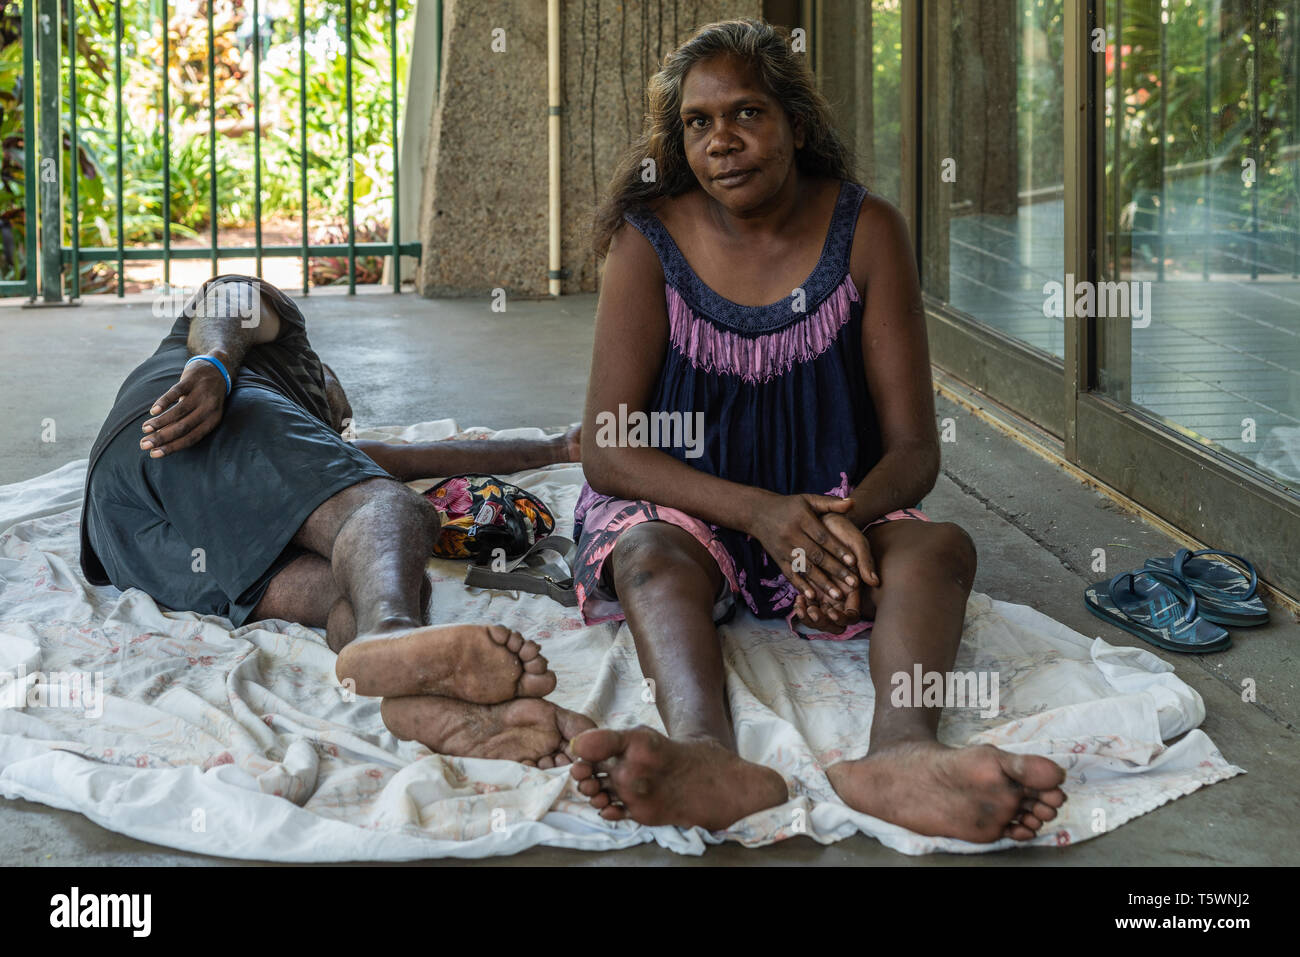 Darwin Australien - Februar 22, 2019: Nahaufnahme von jungen aboriginal Frau hinter im Schatten der Gebäude. Blau und Rosa Kleid, barfuß. Sle Stockfoto